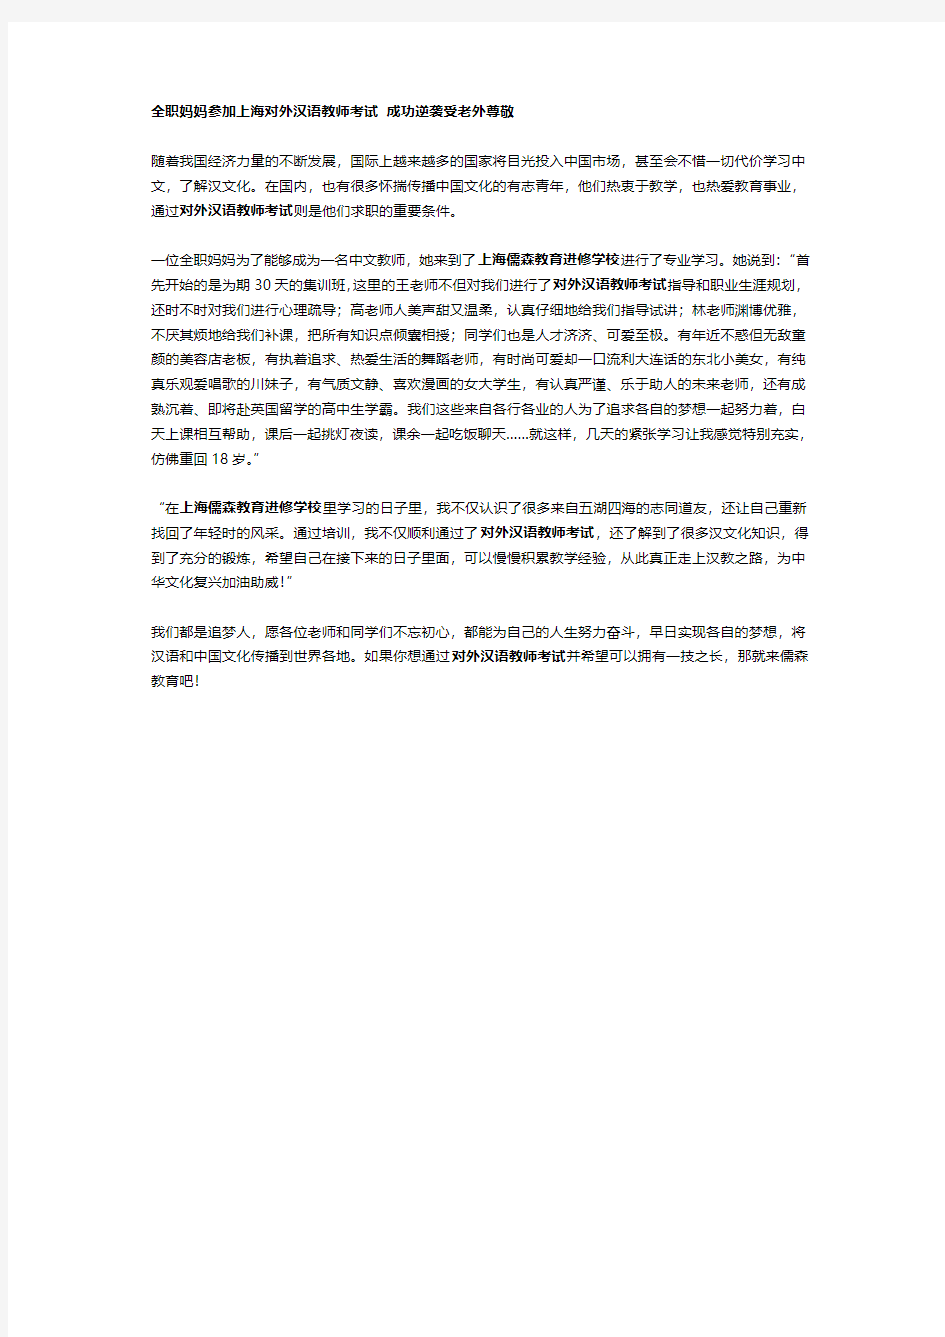 全职妈妈参加上海对外汉语教师考试 成功逆袭受老外尊敬